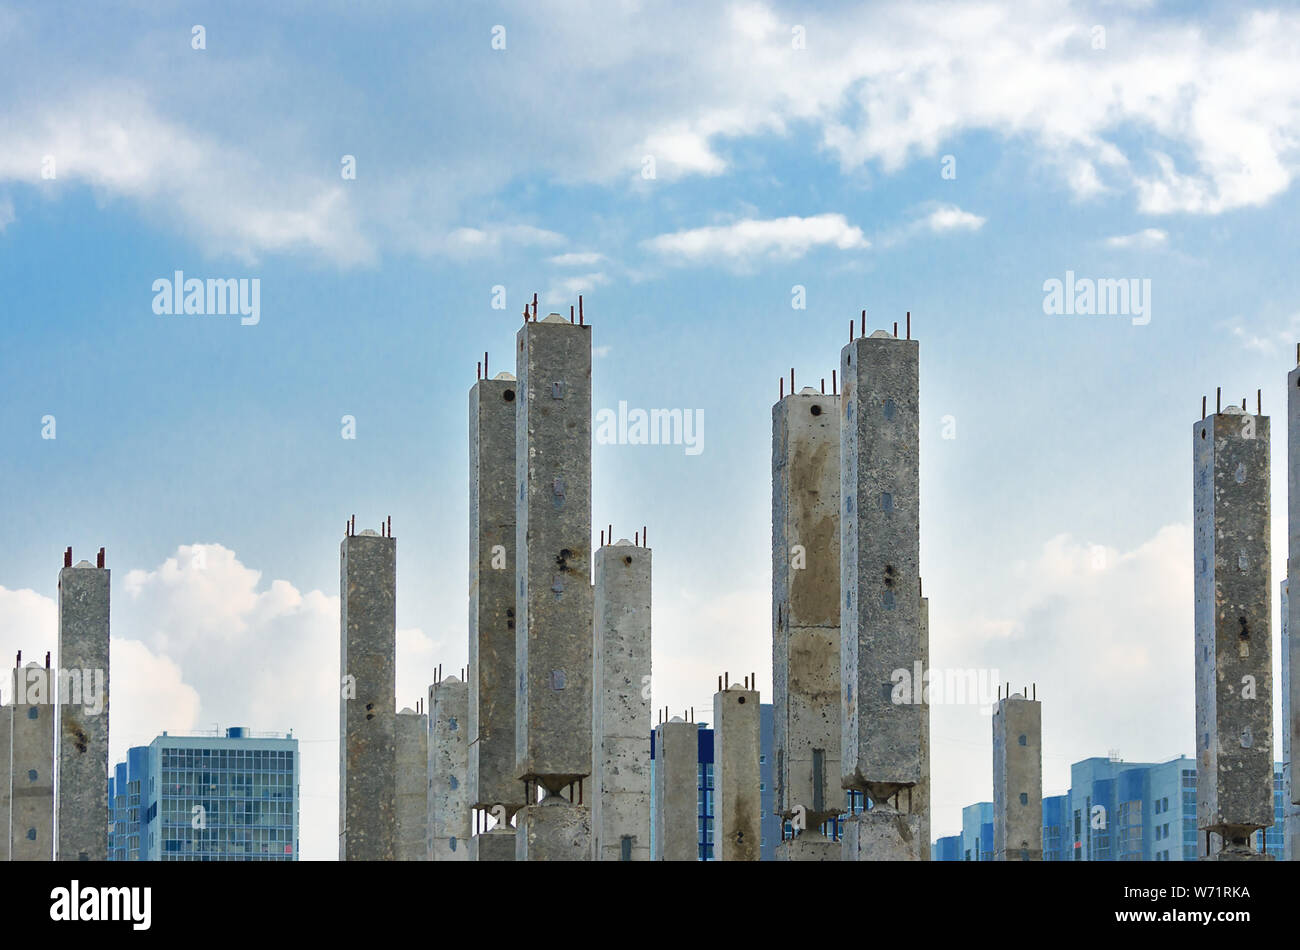 Des colonnes de béton armé verticale avec les armatures at Construction Site, fini les immeubles à appartements, Ciel et nuages en arrière-plan. L'immobilier, Habiter Banque D'Images